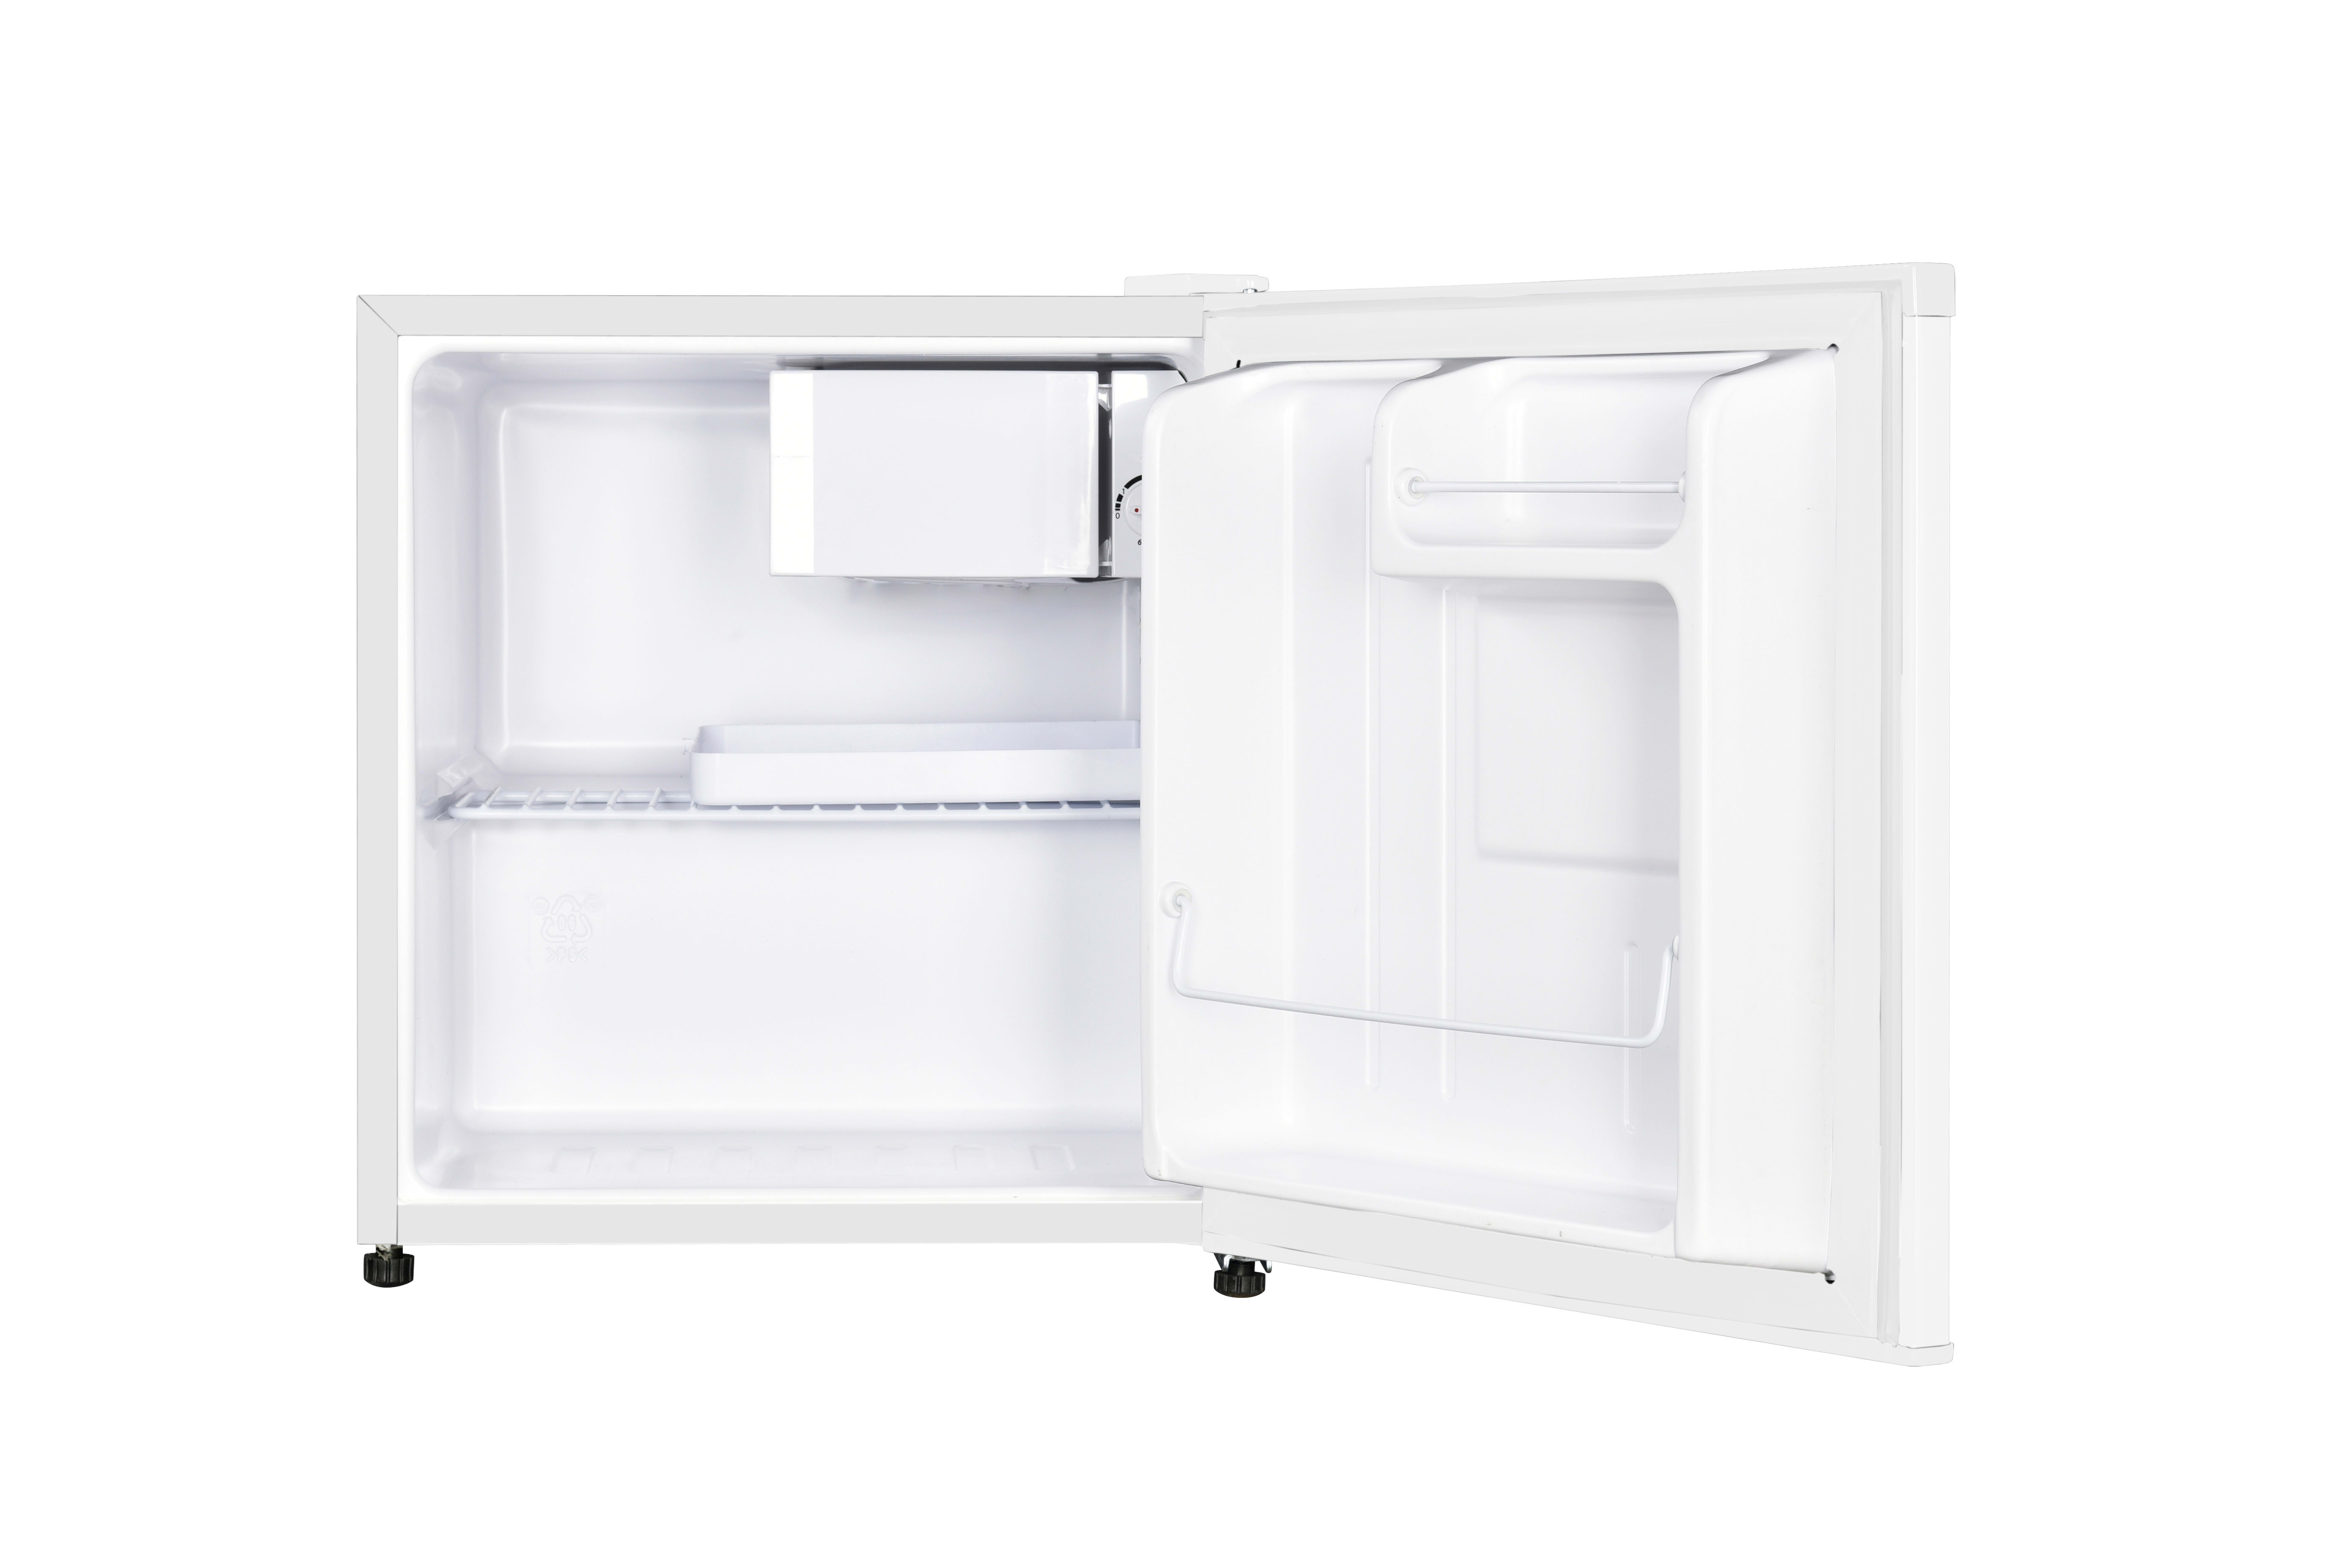 MEDIDAS de frigobar (mini refrigerador) whirlpool, magic chef, coca cola 